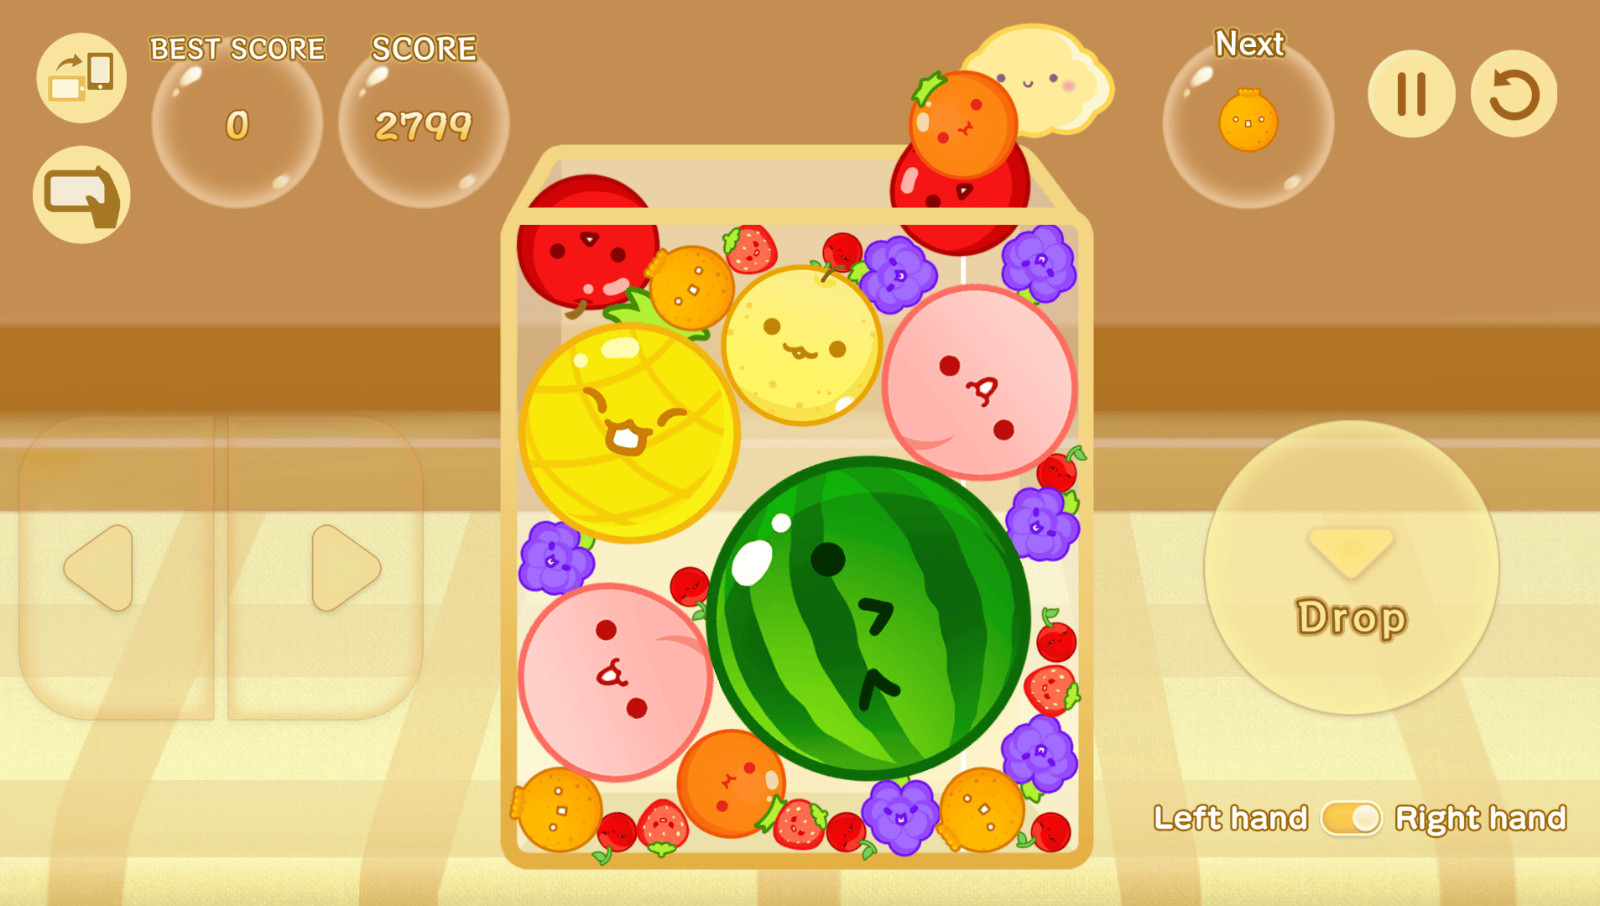 《西瓜遊戲》即日起正式推出Android版本，讓更多喜愛西瓜遊戲的玩家能在各個平台同享組合水果的樂趣（圖為Android遊戲介面）